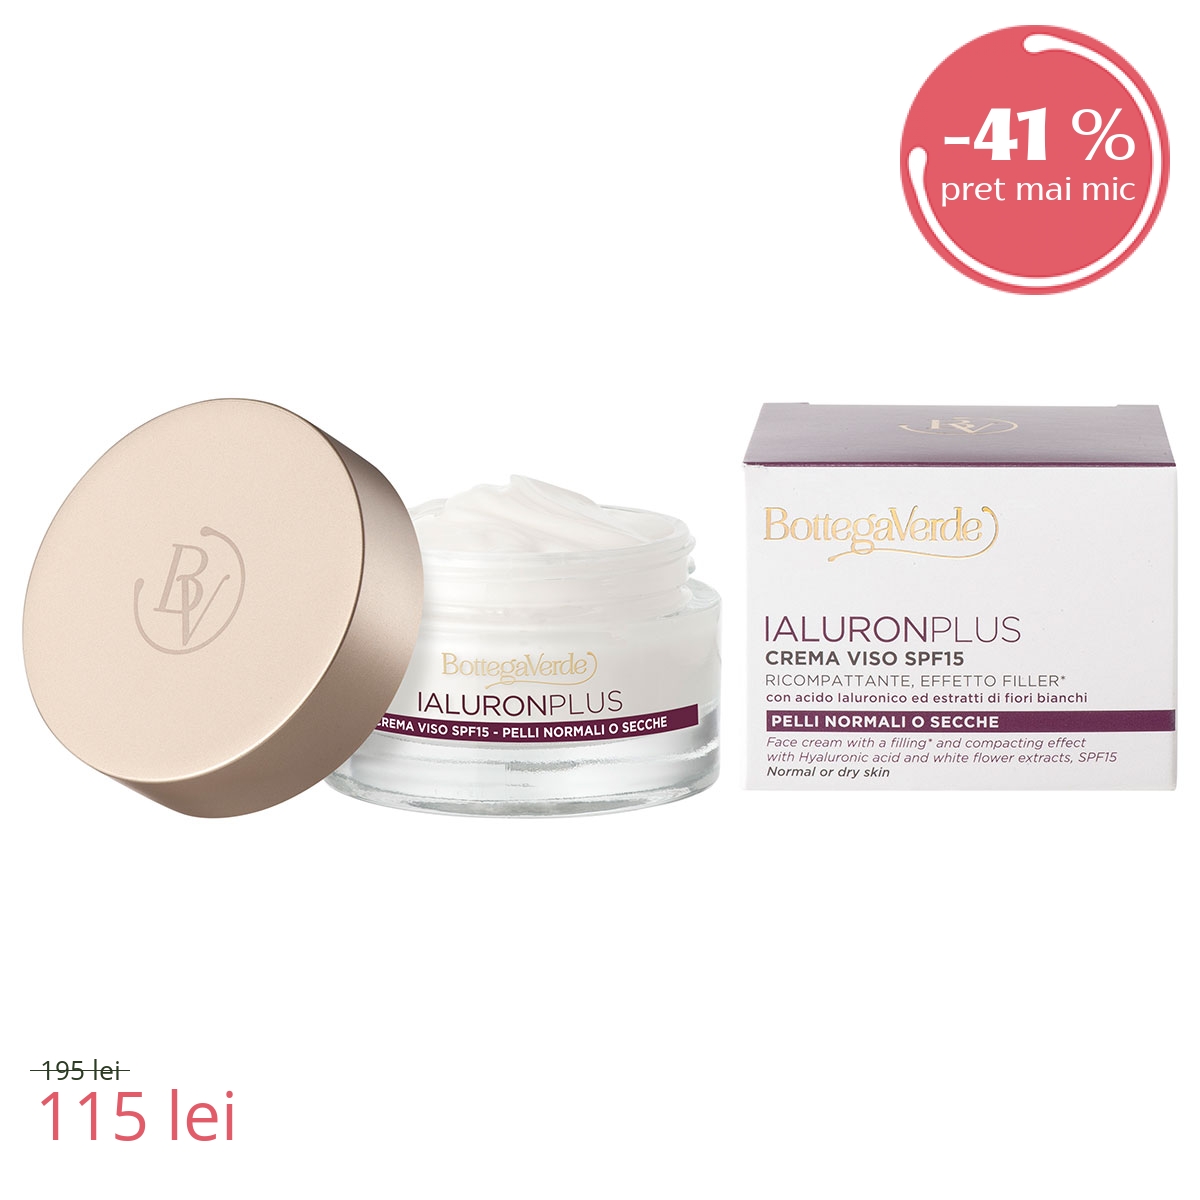 Crema de fata, efect filler, cu acid hialuronic si extract din flori albe, conceputa pentru toate tipurile de ten - Ialuron Plus, 50 ML - Ialuron Plus, 50 ML